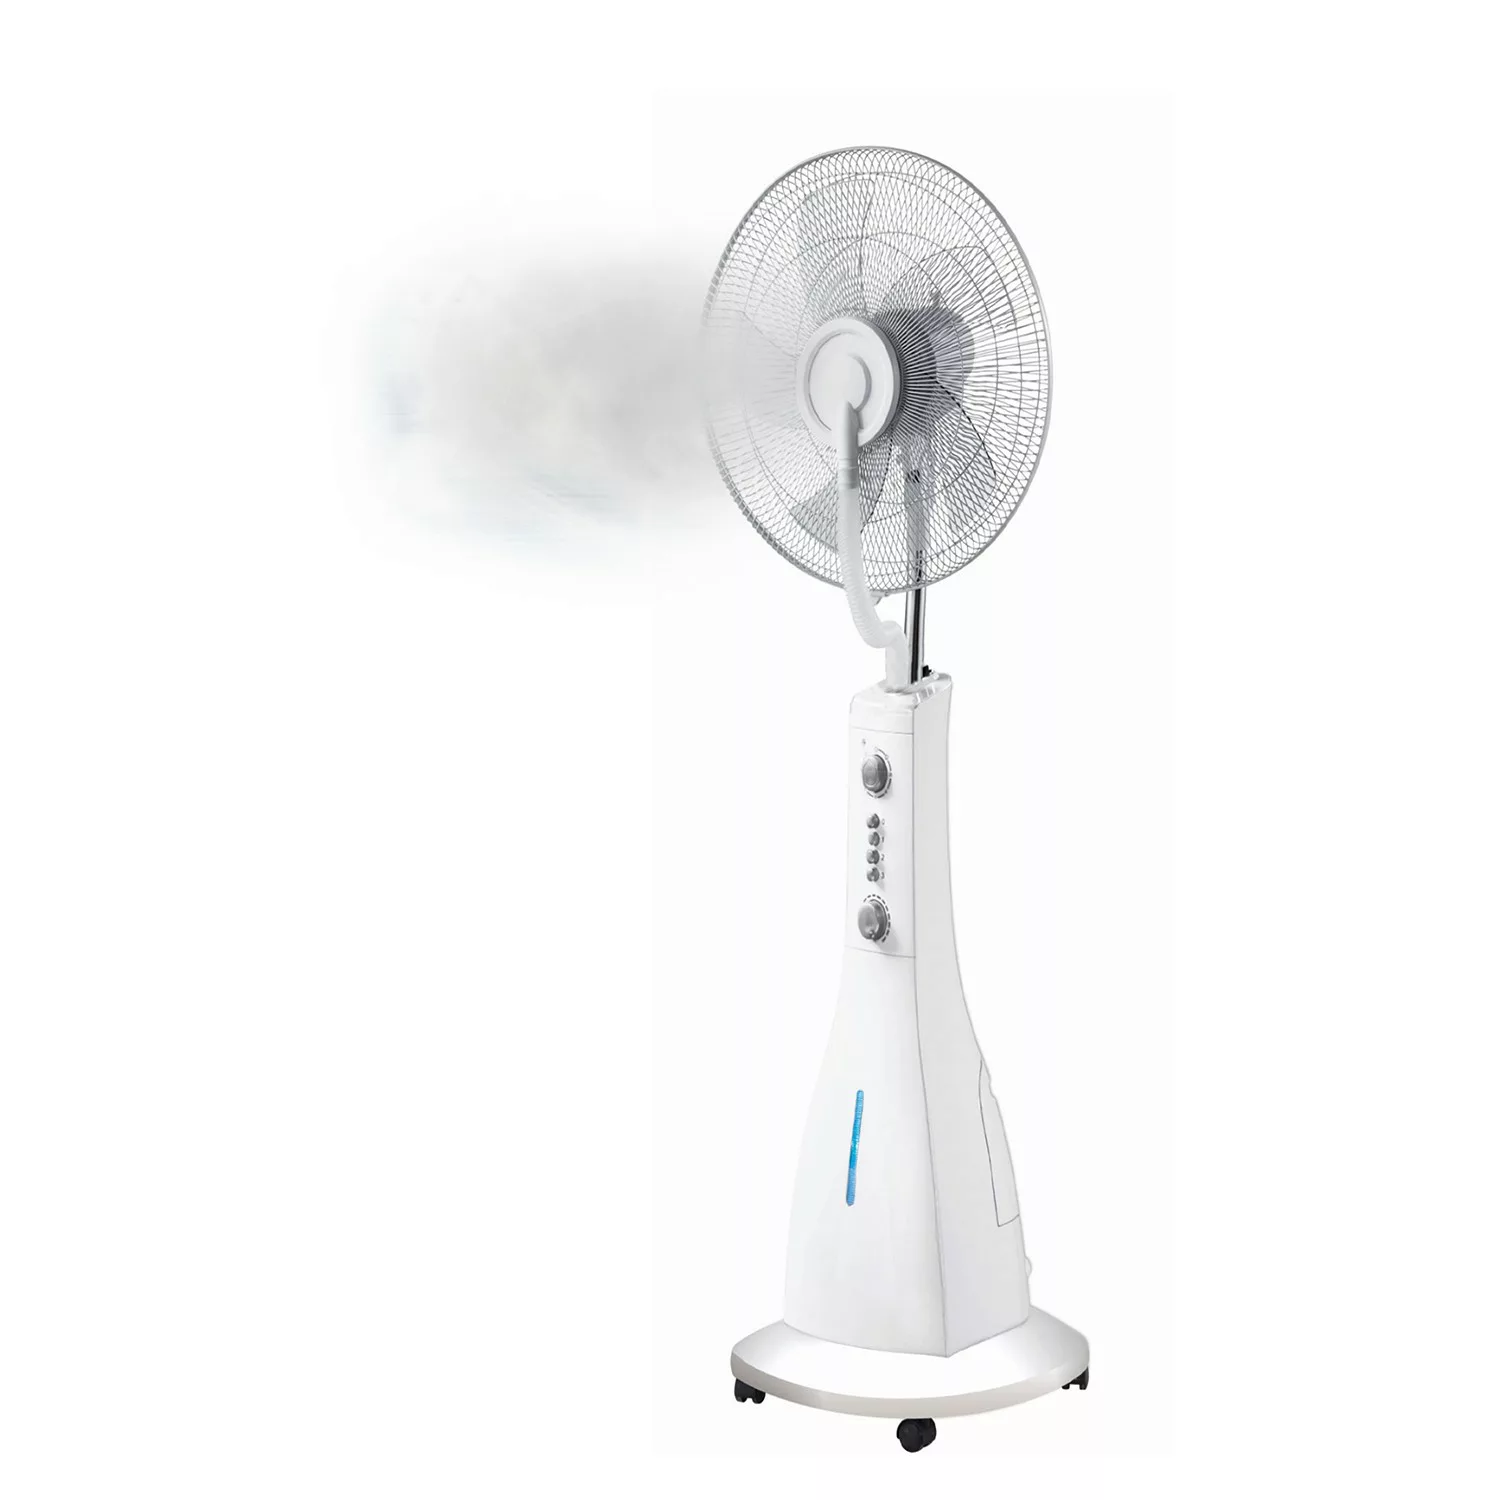 Stand-Ventilator Coolio mit Luftbefeuchter günstig online kaufen